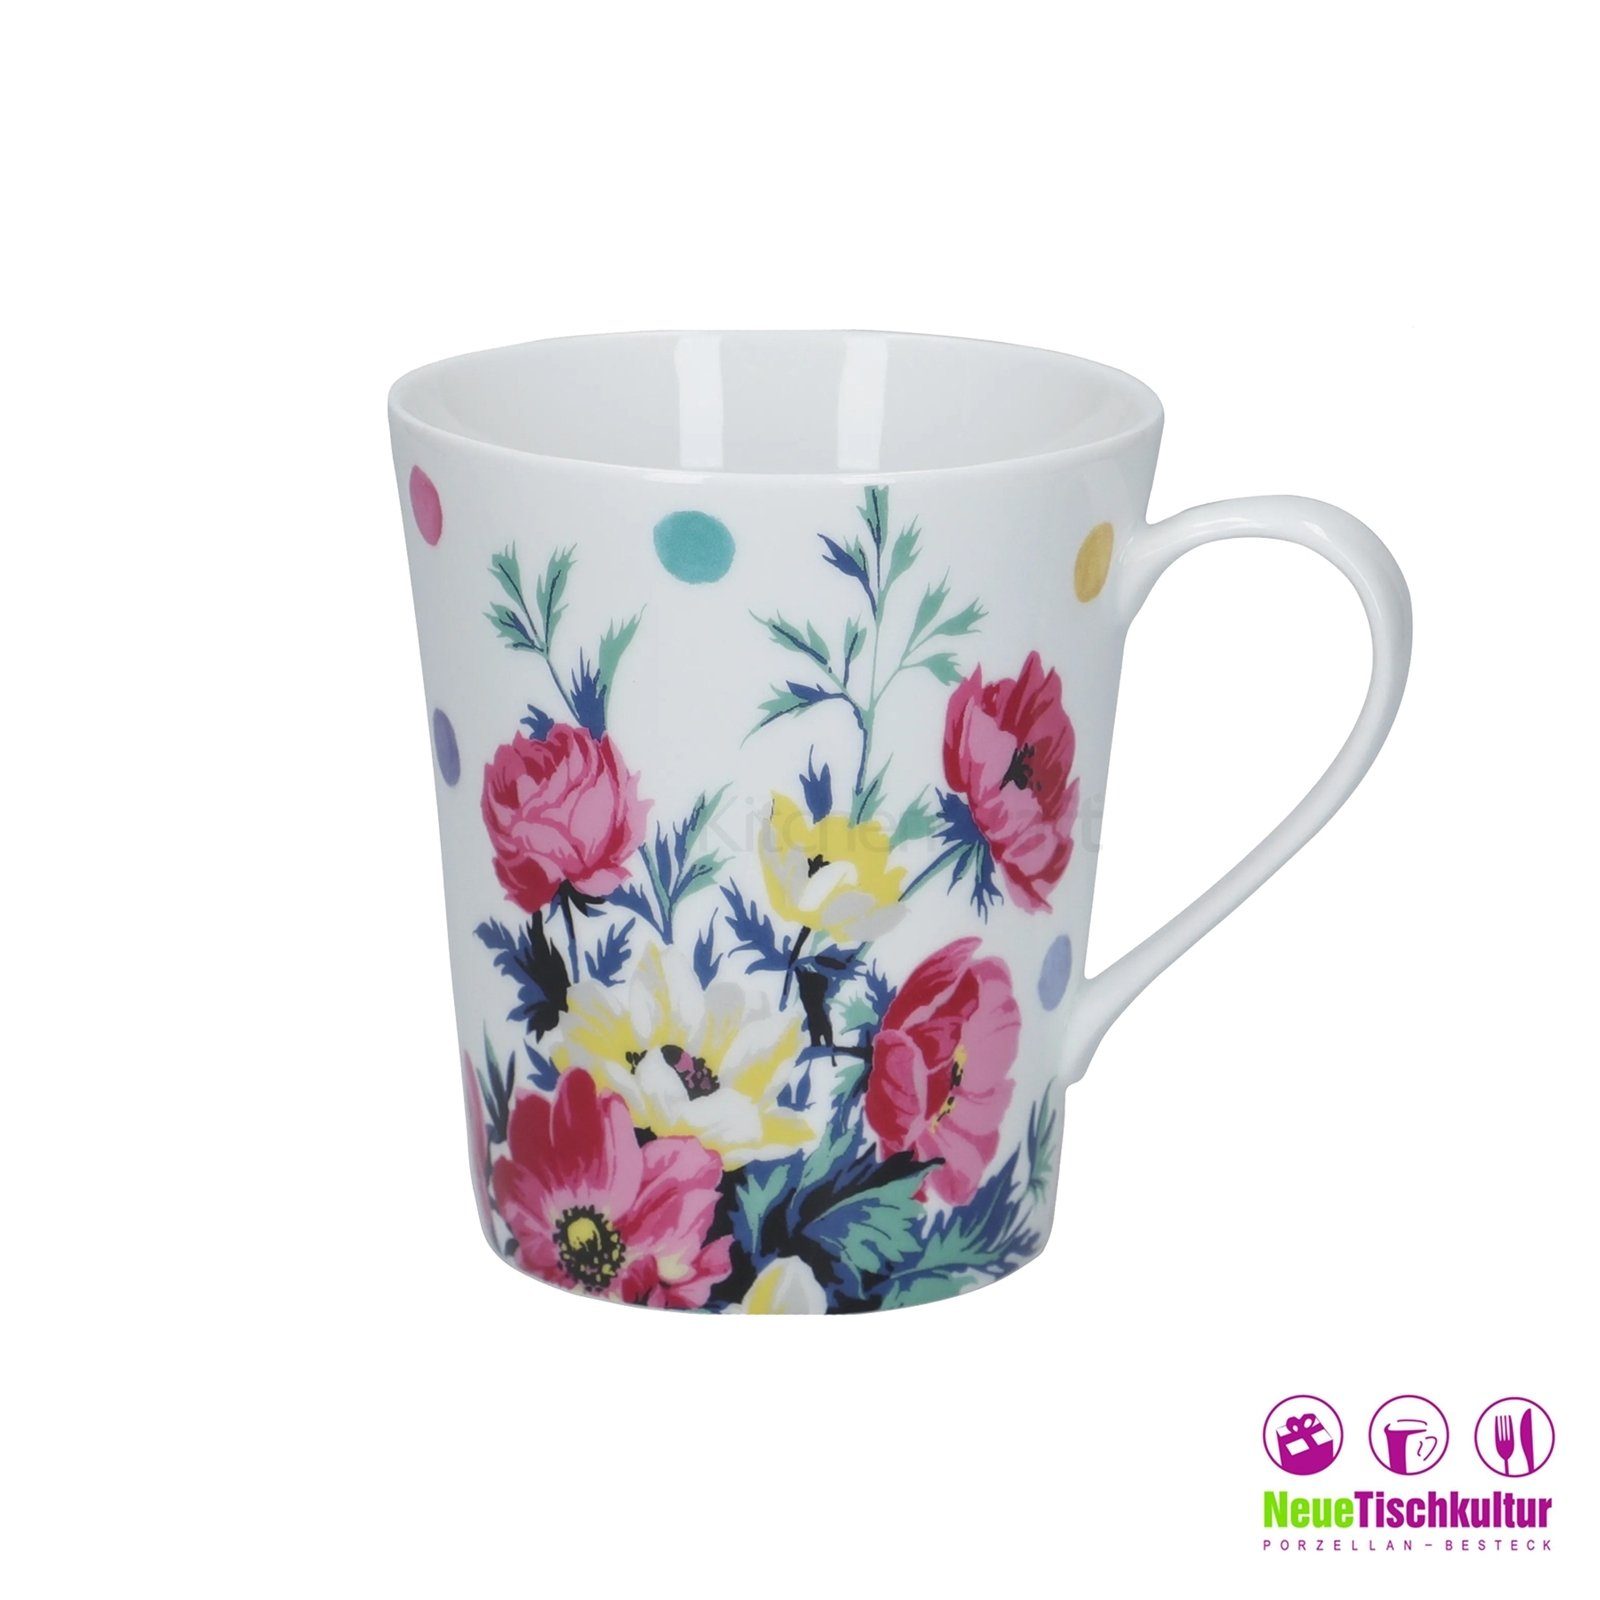 Neuetischkultur Tasse Kaffeetasse Porzellan Blumendekor Kaffeebecher Blume Porzellan, Weiß Bunt 4er-Set Mikasa